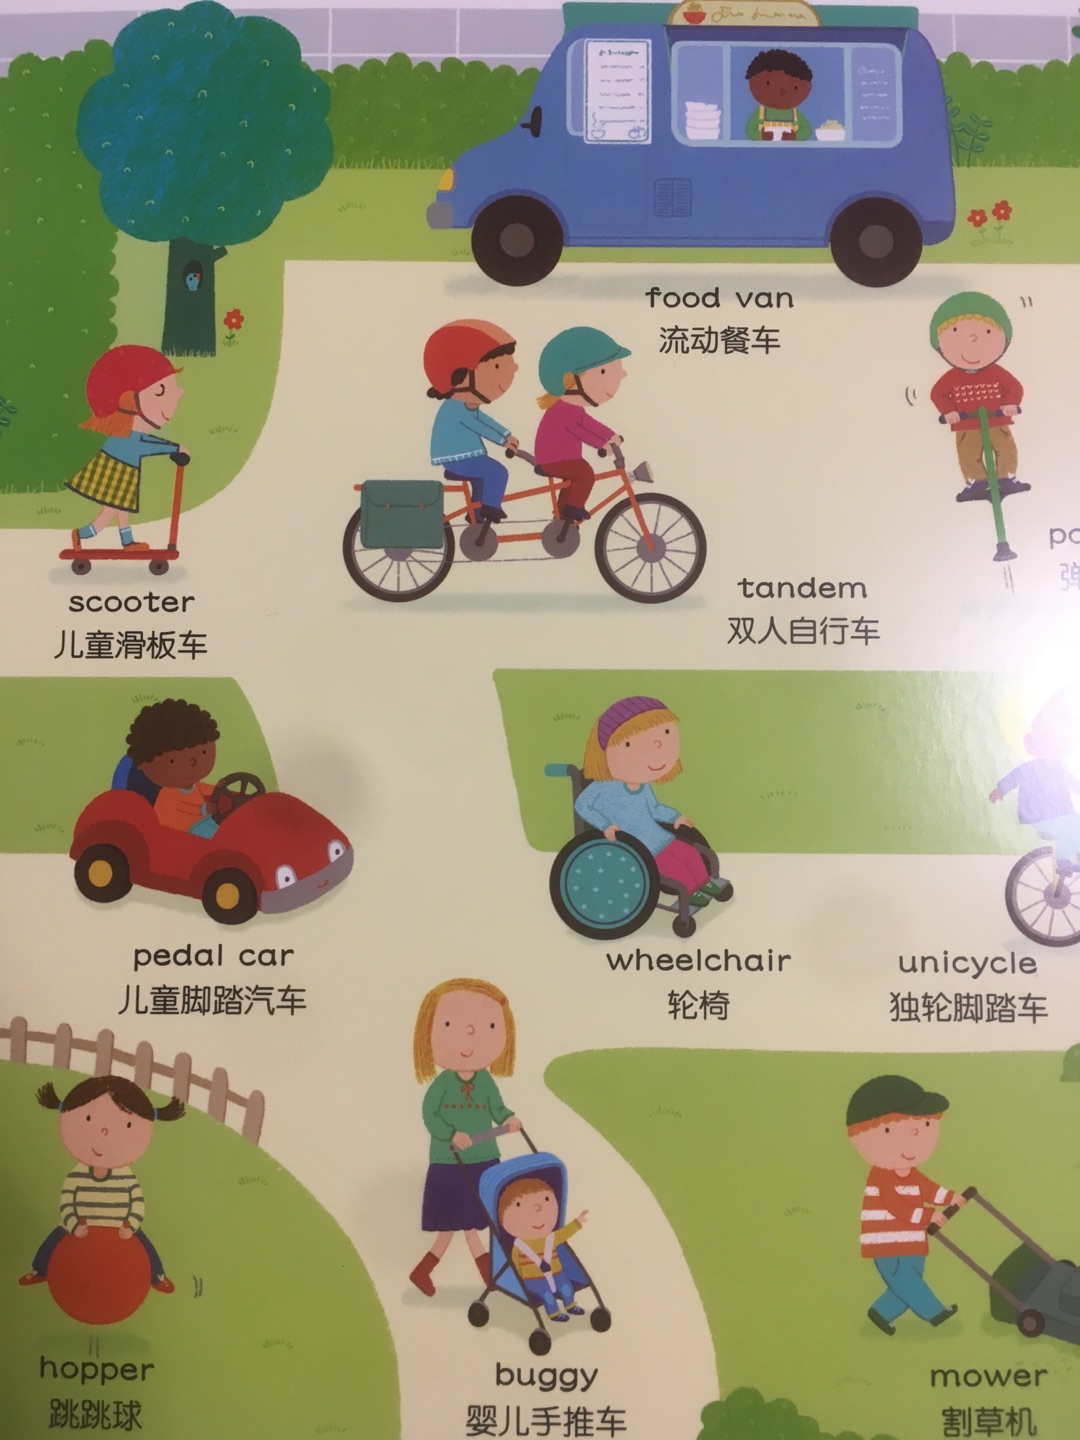 给小孩认东西用的，先学中文也挺好，好多英文单词大人也不认识，一起学习，图画风格挺好，希望孩子喜欢